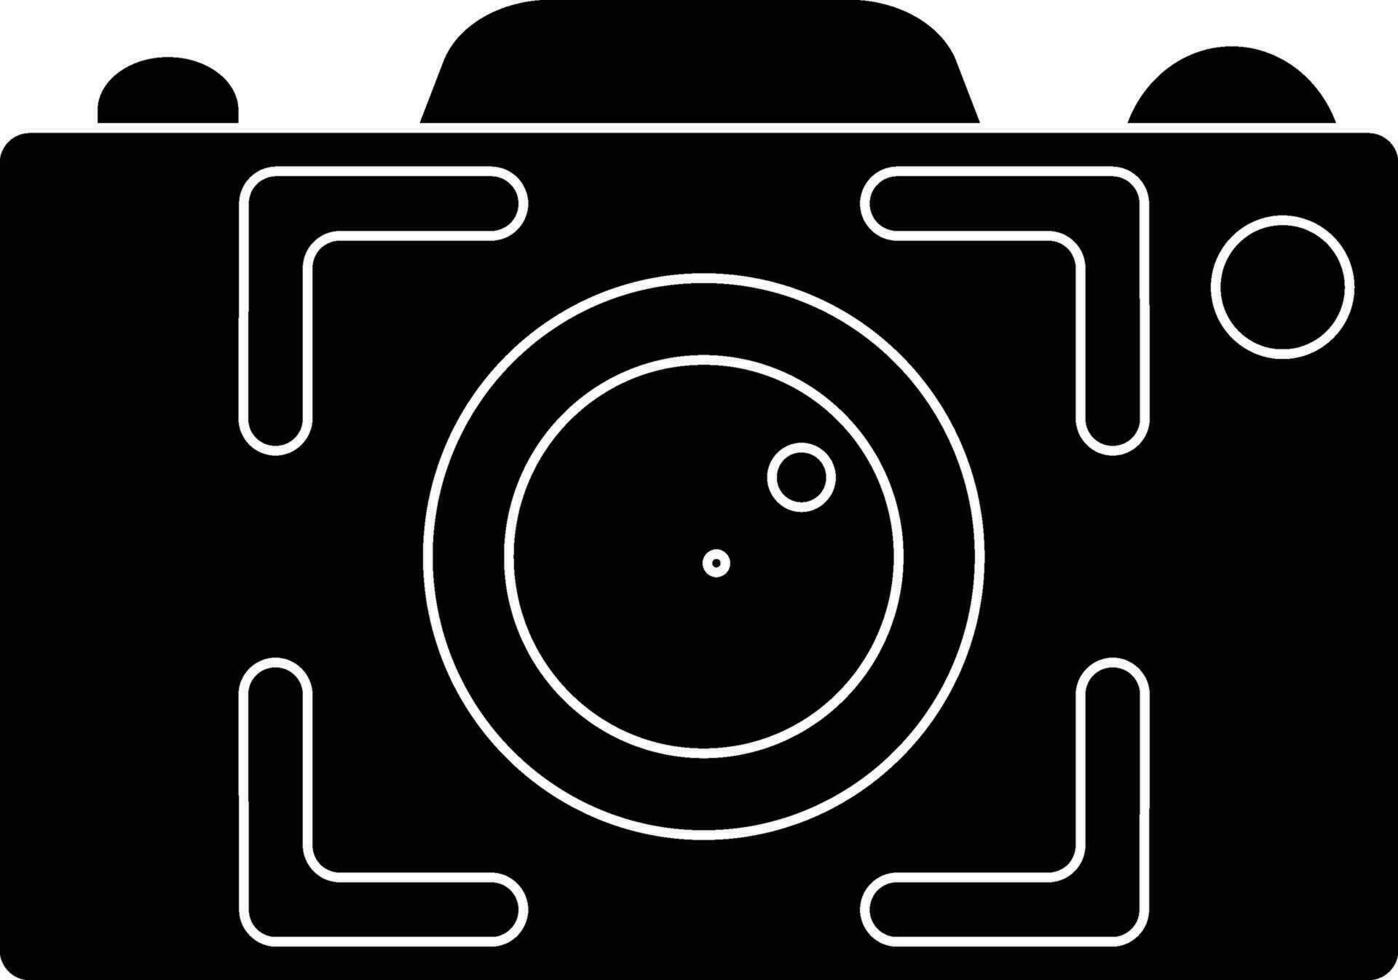 negro y blanco capturar cámara en plano estilo. vector